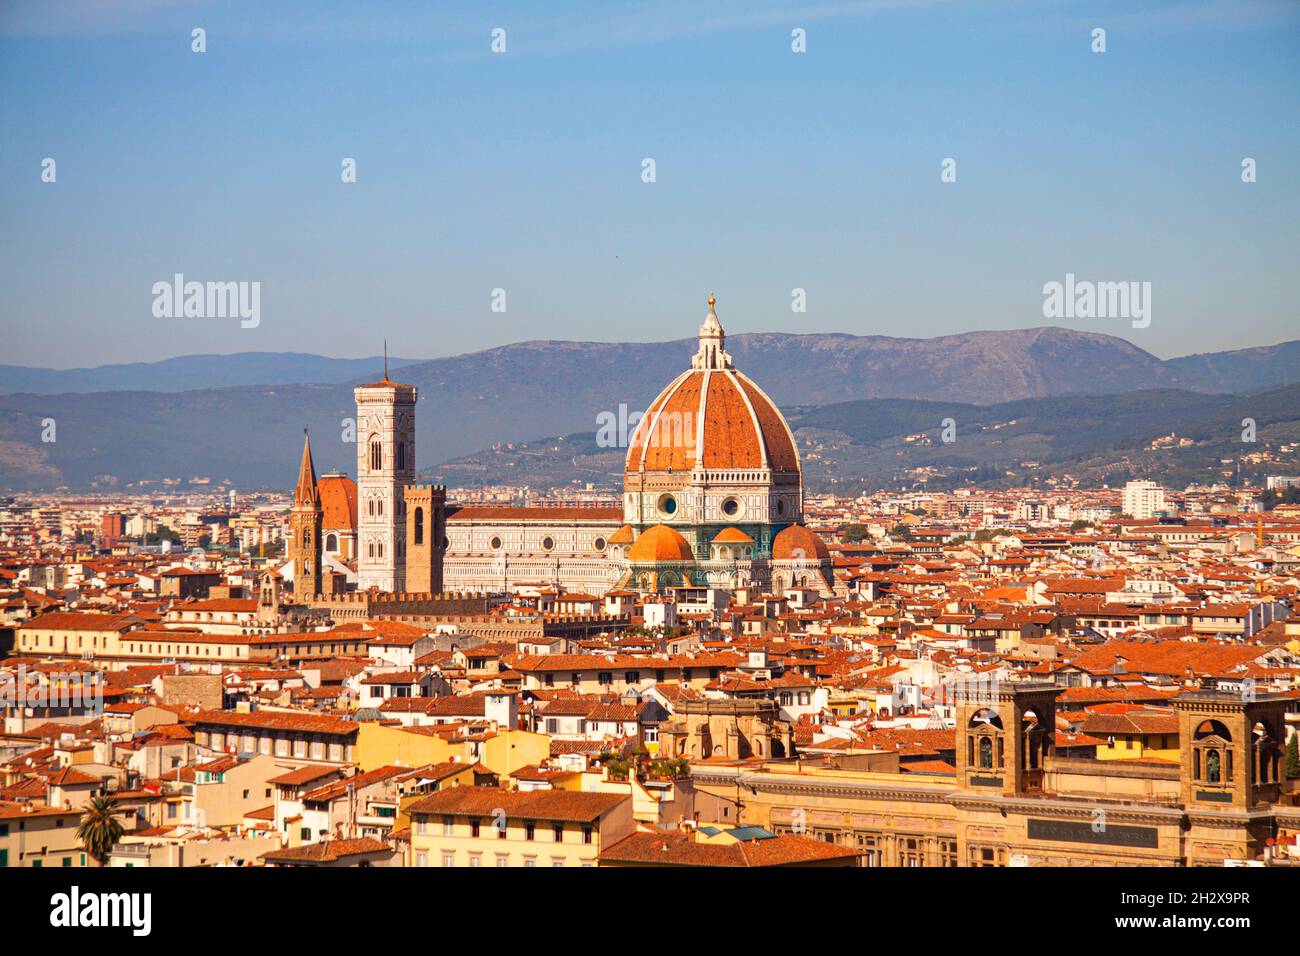 Cathédrale Santa Maria del Fiore de Florence, Italie.Vue panoramique Aereal avec dôme de Filippo Brunelleschi et clocher dominant la ligne d'horizon Banque D'Images